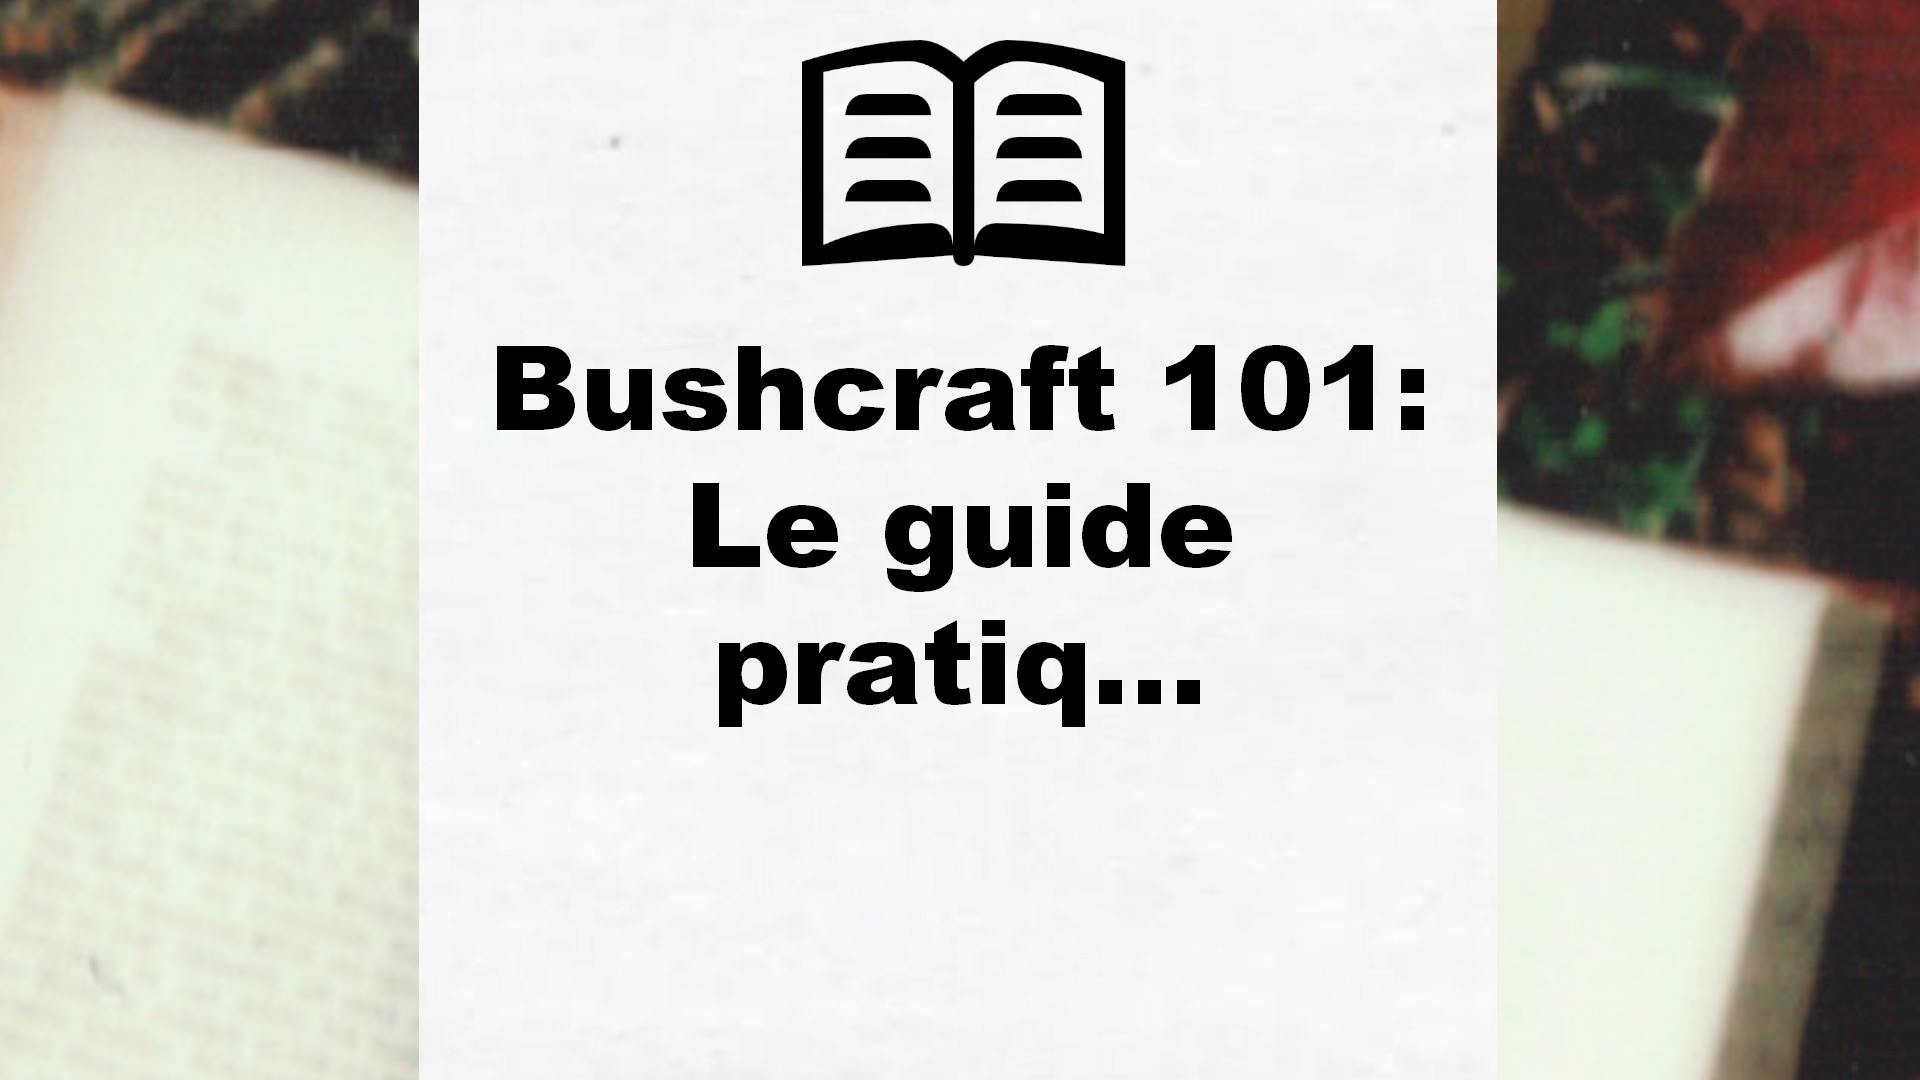 Bushcraft 101: Le guide pratiq… – Critique